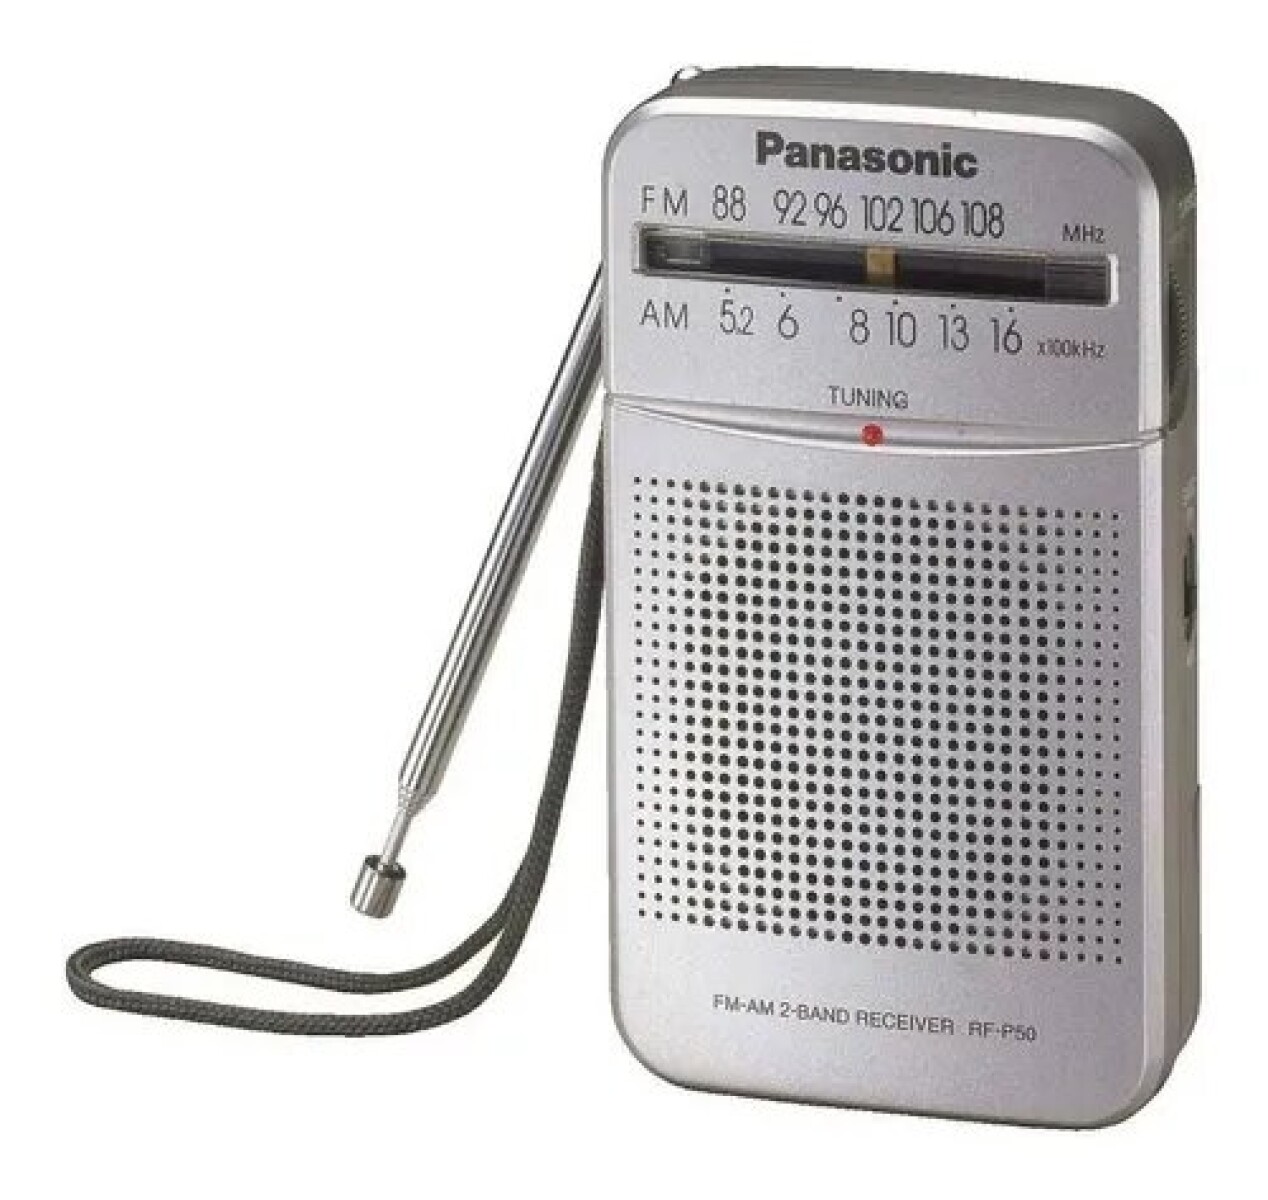 RADIO PANASONIC PORATIL AM/FM A PILAS CORREA DE MANO - Radio Panasonic Poratil Am/fm A Pilas Correa De Mano 